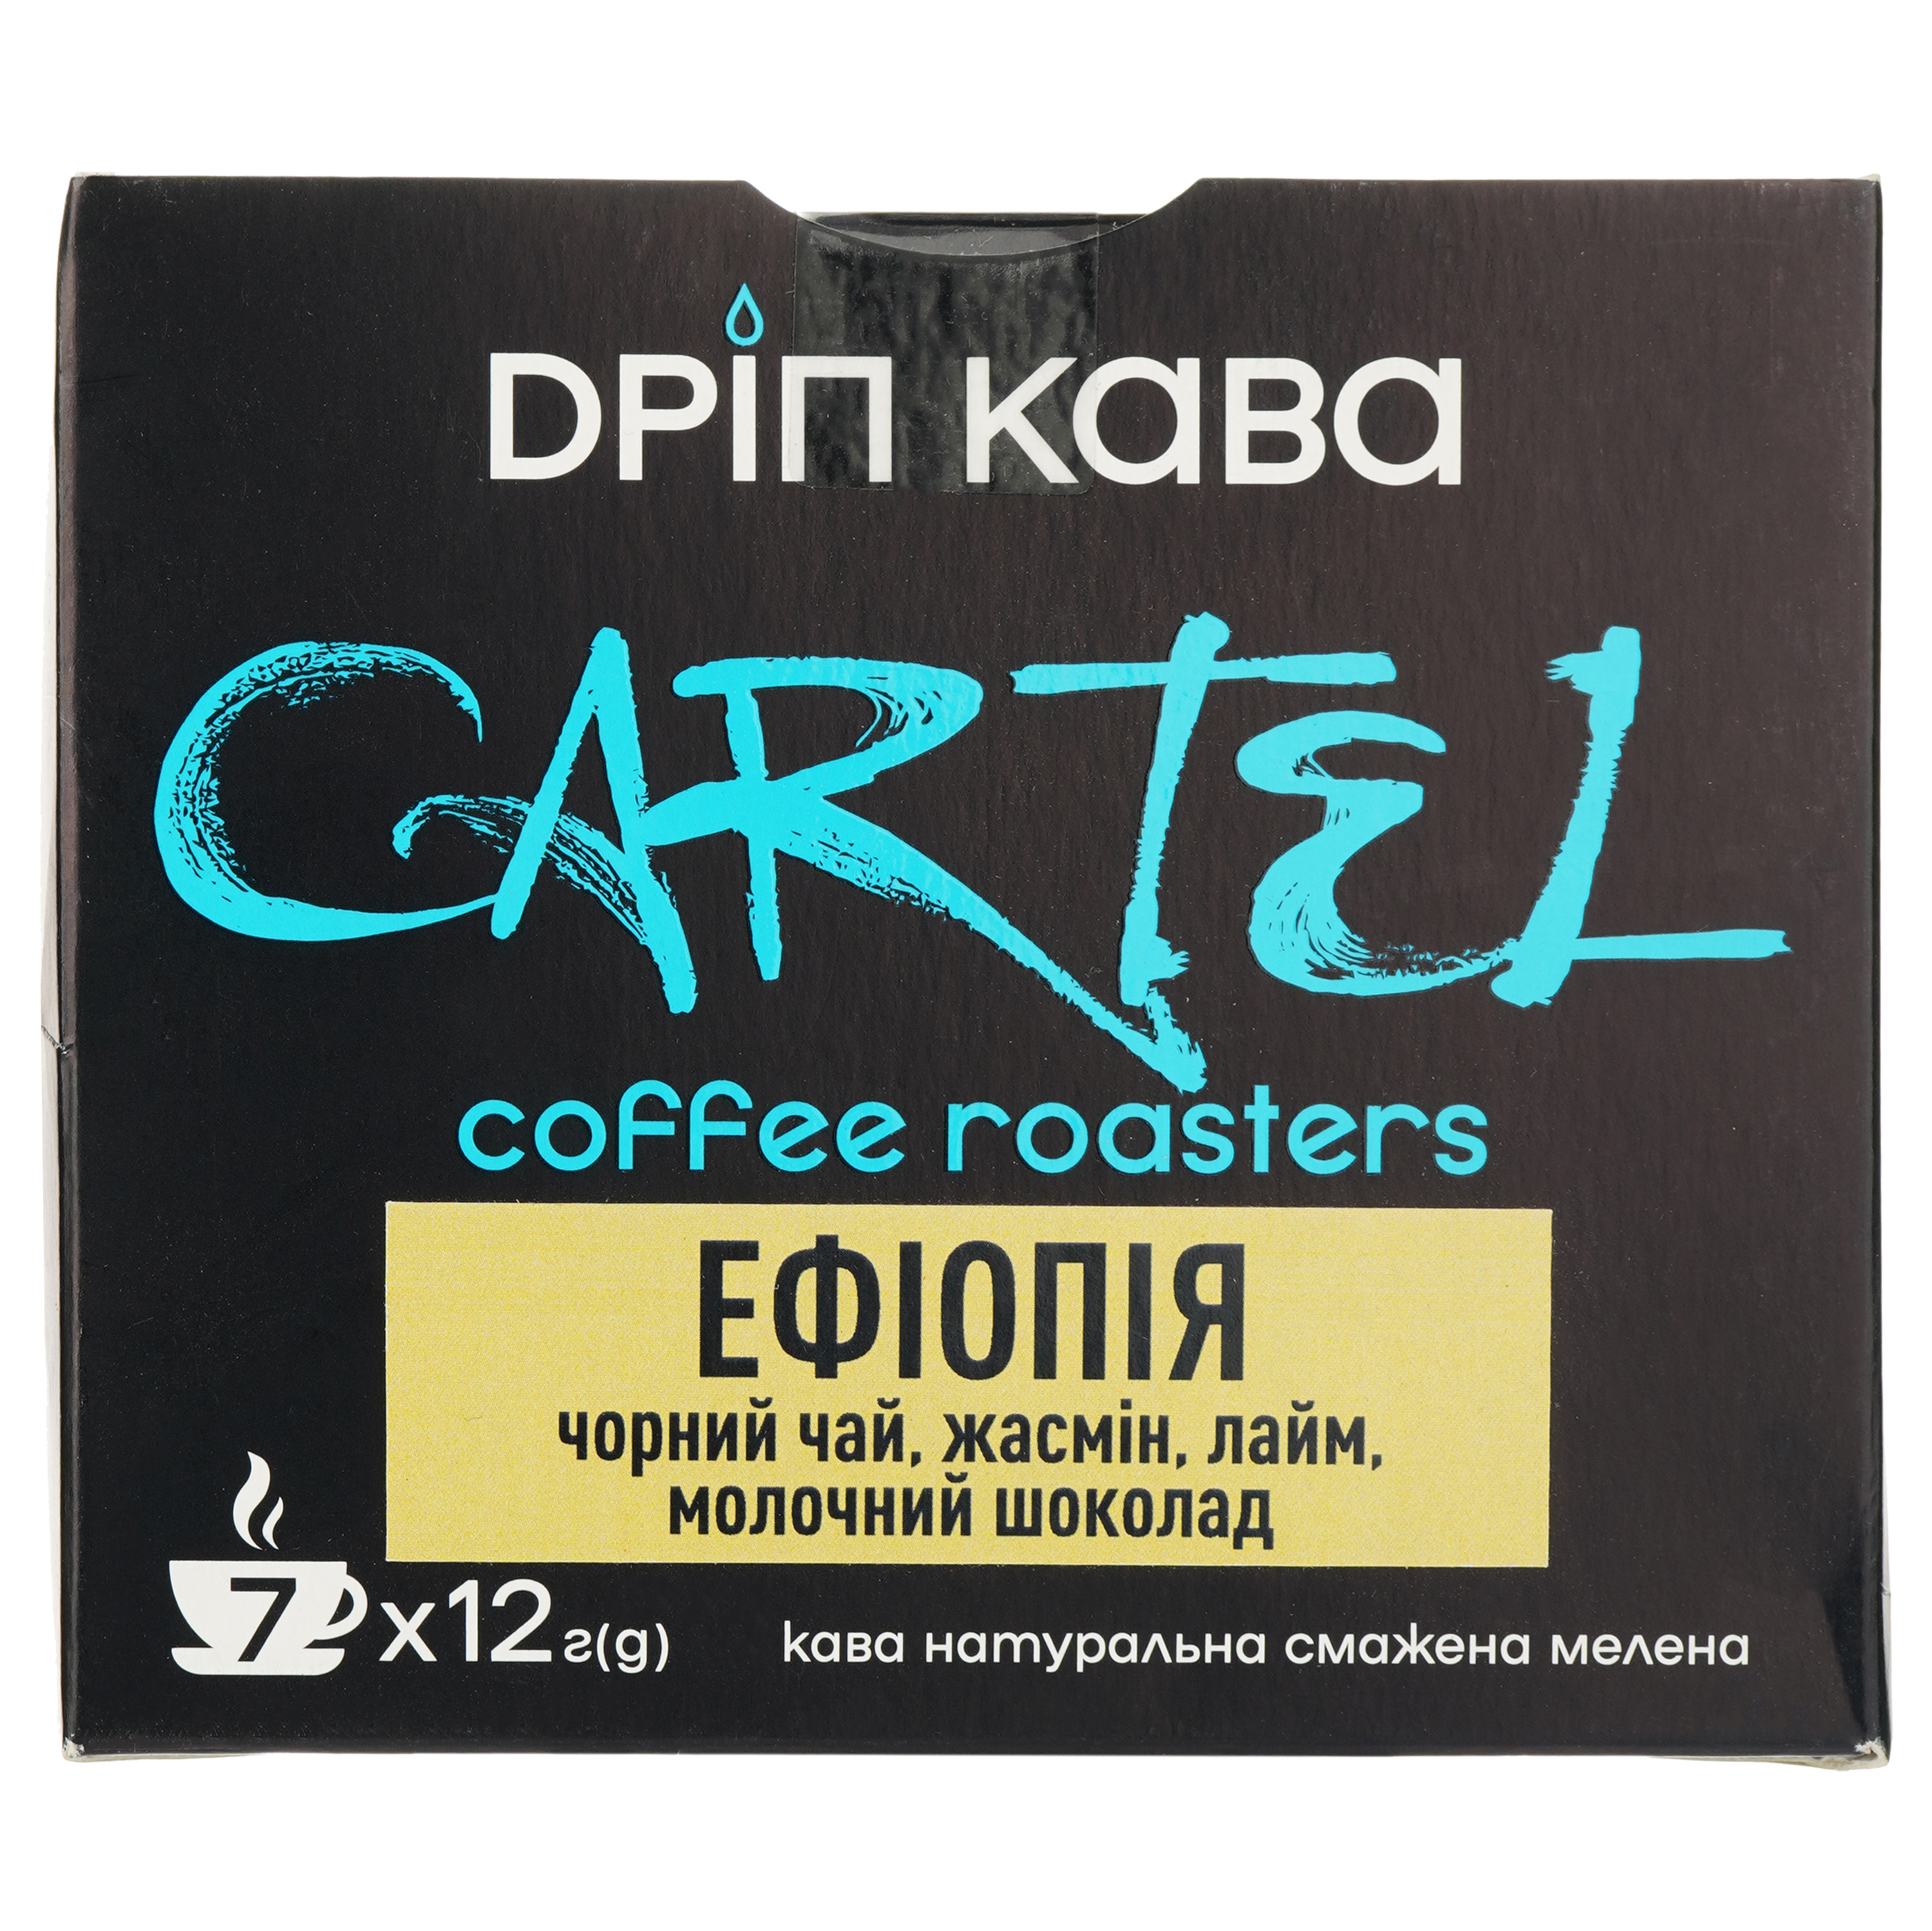 Дрип-кофе Cartel Эфиопия 84 г (7 шт. по 12 г) - фото 2